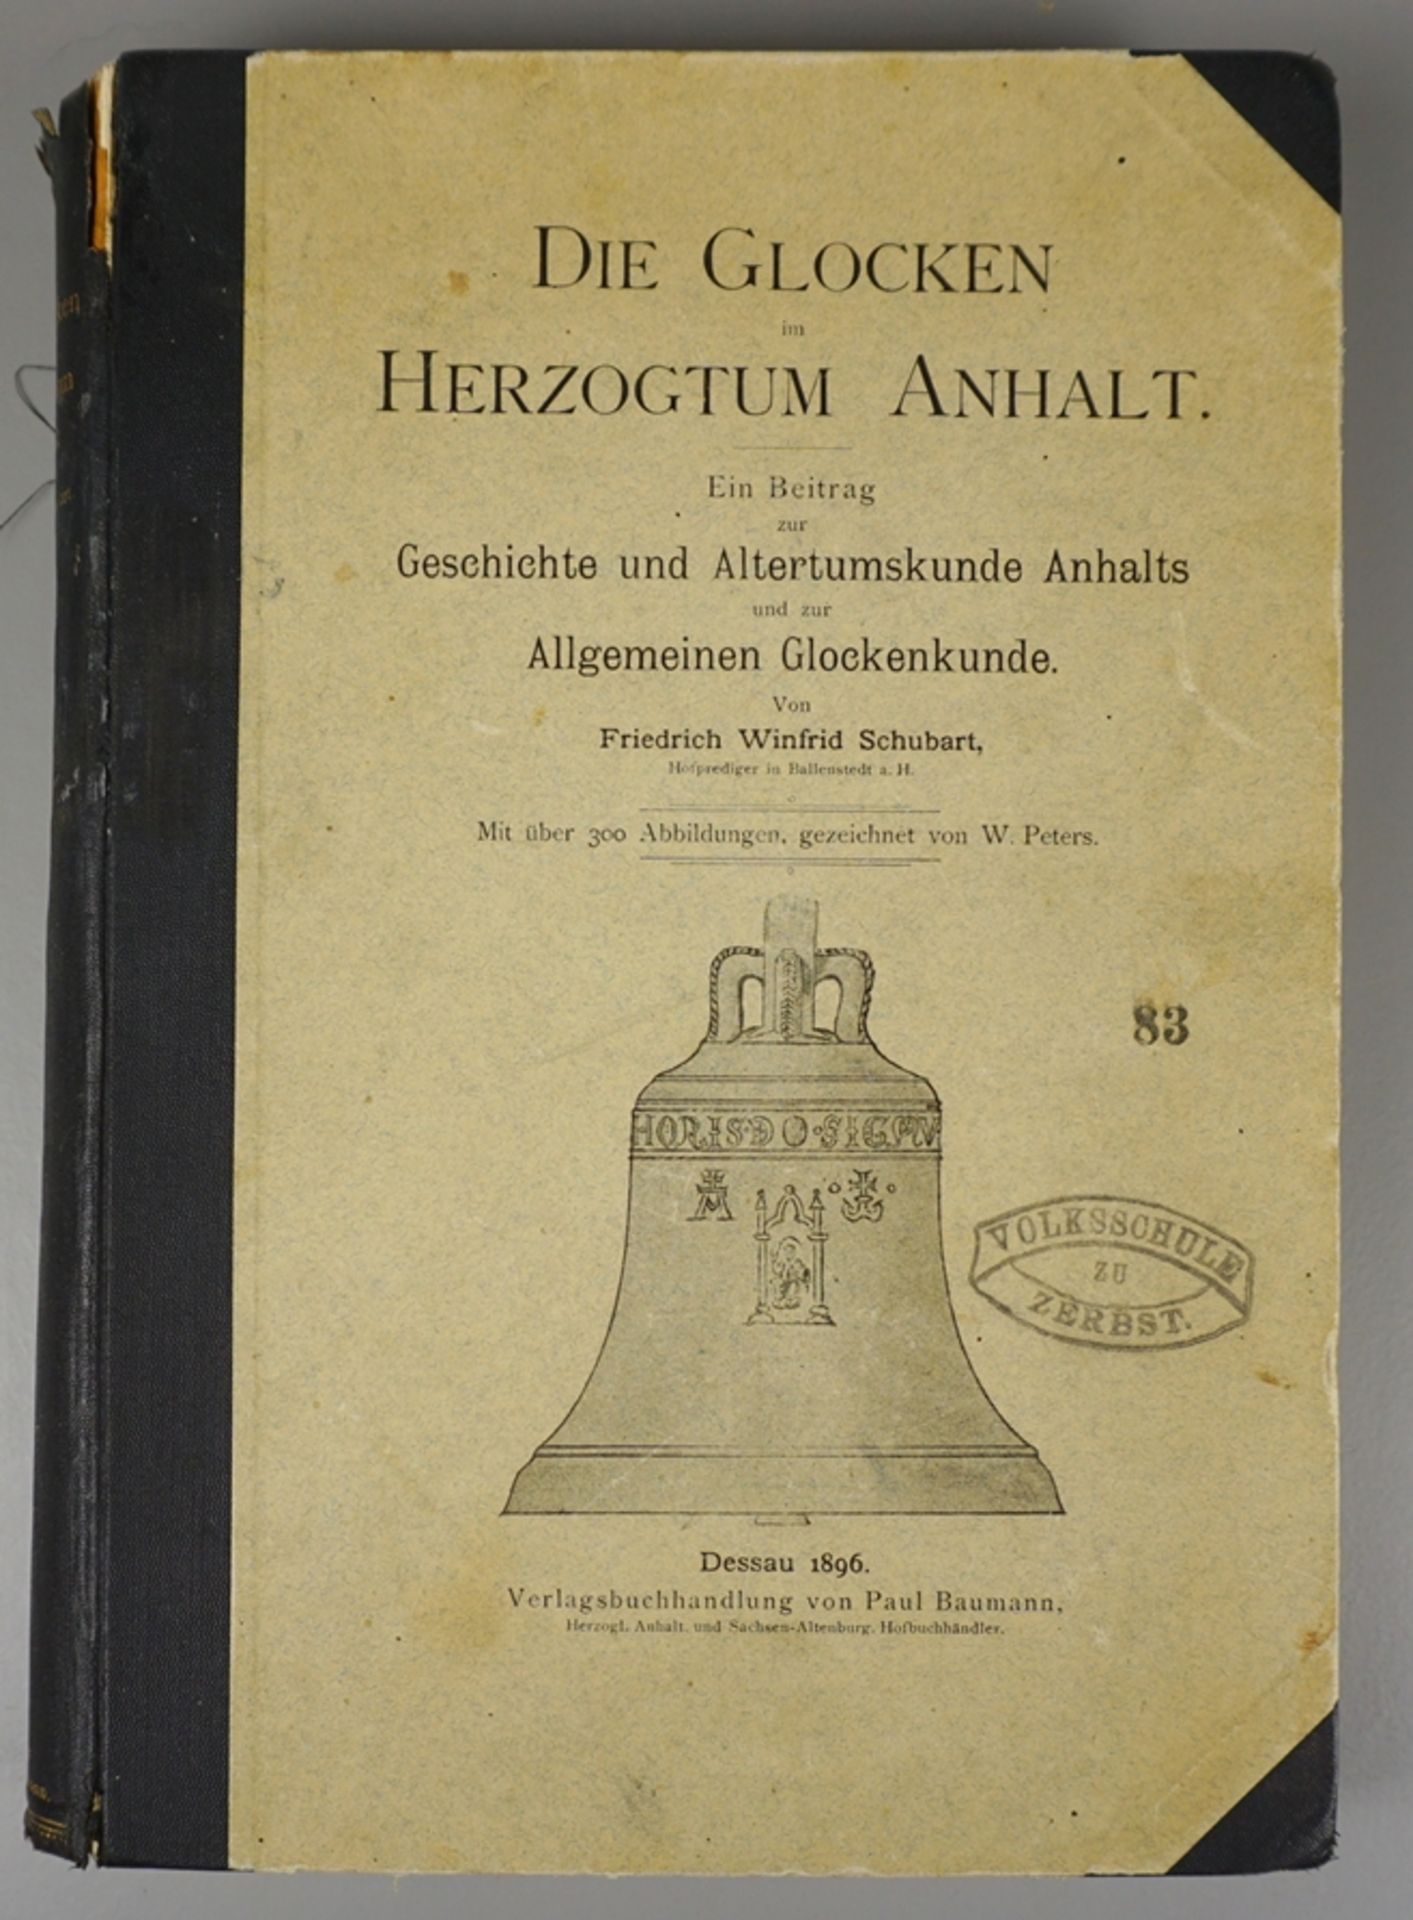 Die Glocken im Herzogtum Anhalt, von Friedrich Winfrid Schubart, Dessau 1896